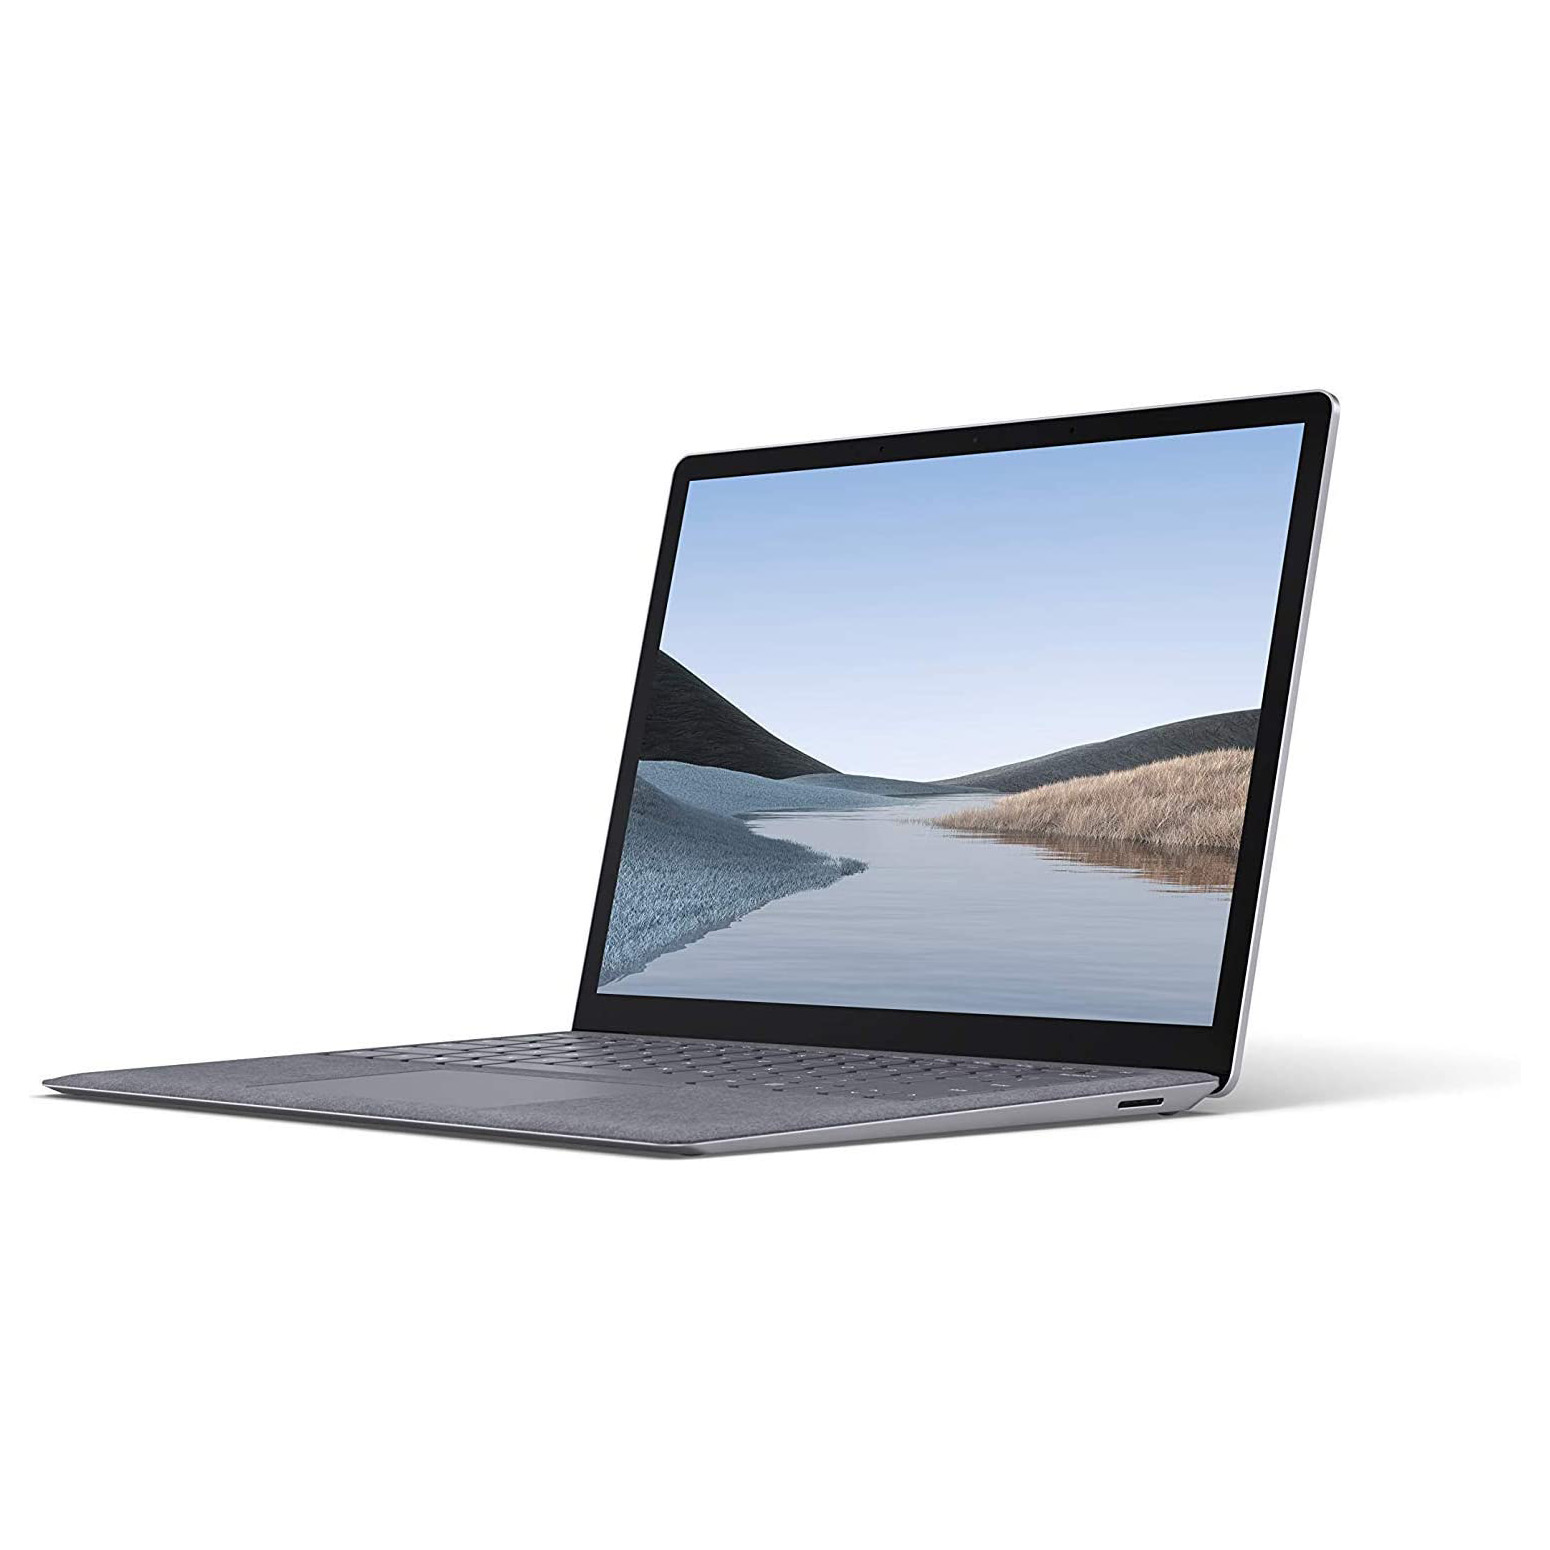 لپ تاپ 13.5 اینچی مایکروسافت Microsoft Surface Laptop 3 Intel® Core™i5-1035G7 8/128GB SSD 13.5 inches QHD Touchscreen Intel® Iris™ PlusGraphics System Shared - آونگ سل - فروشگاه تخصصی لپ تاپ و تجهیزات کامپیوتری